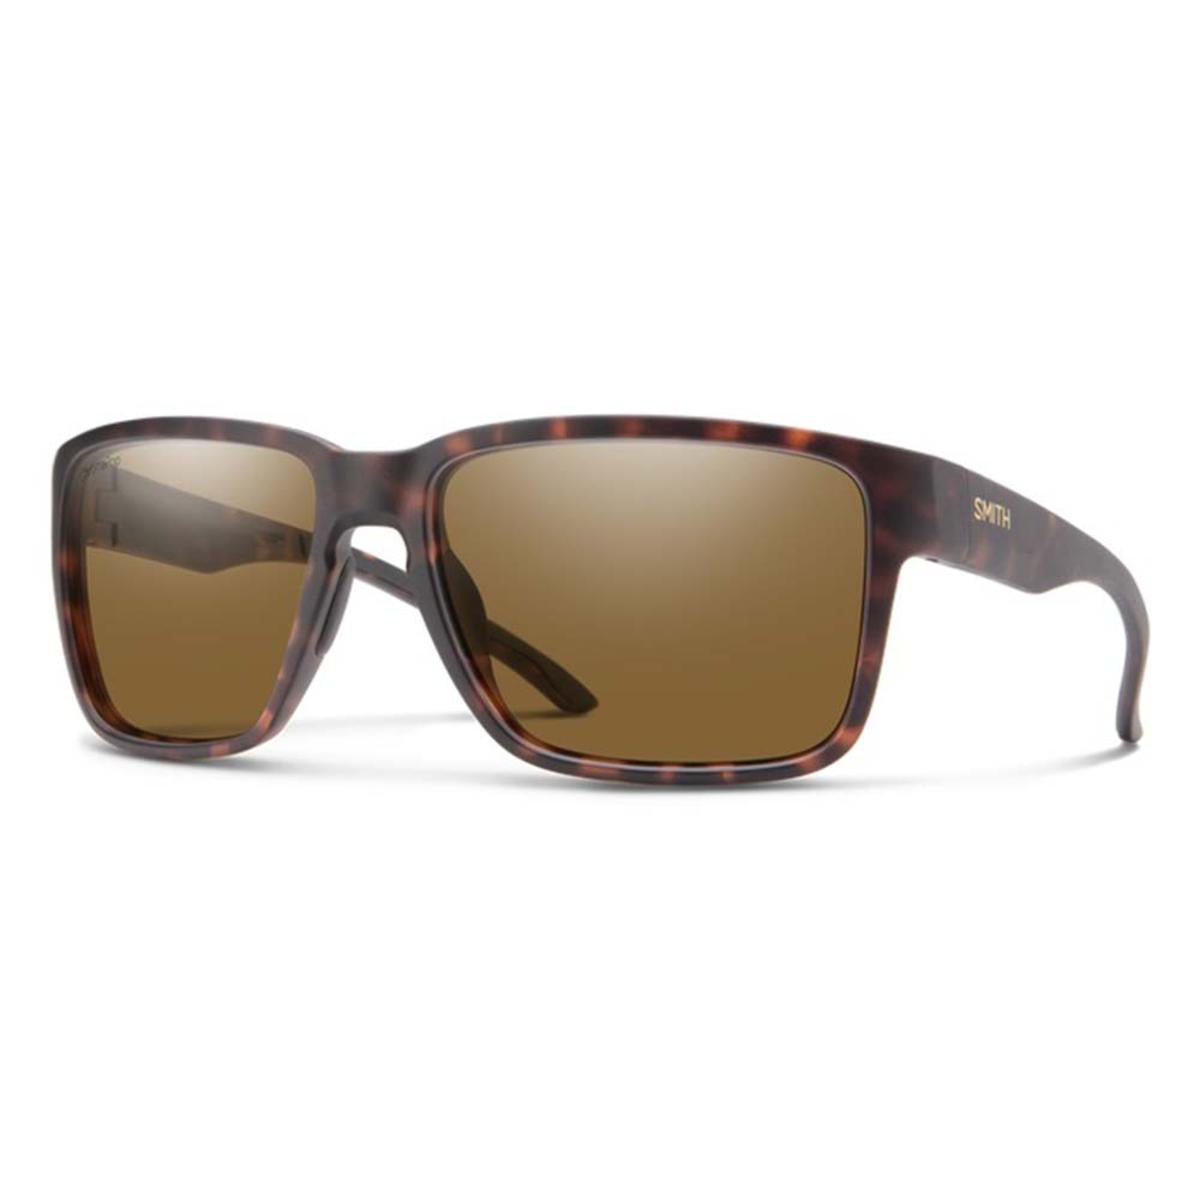 Smith Optics Emerge Sunglasses ChromaPop Polarized Brown Mirror - Matte Tortoise Frame